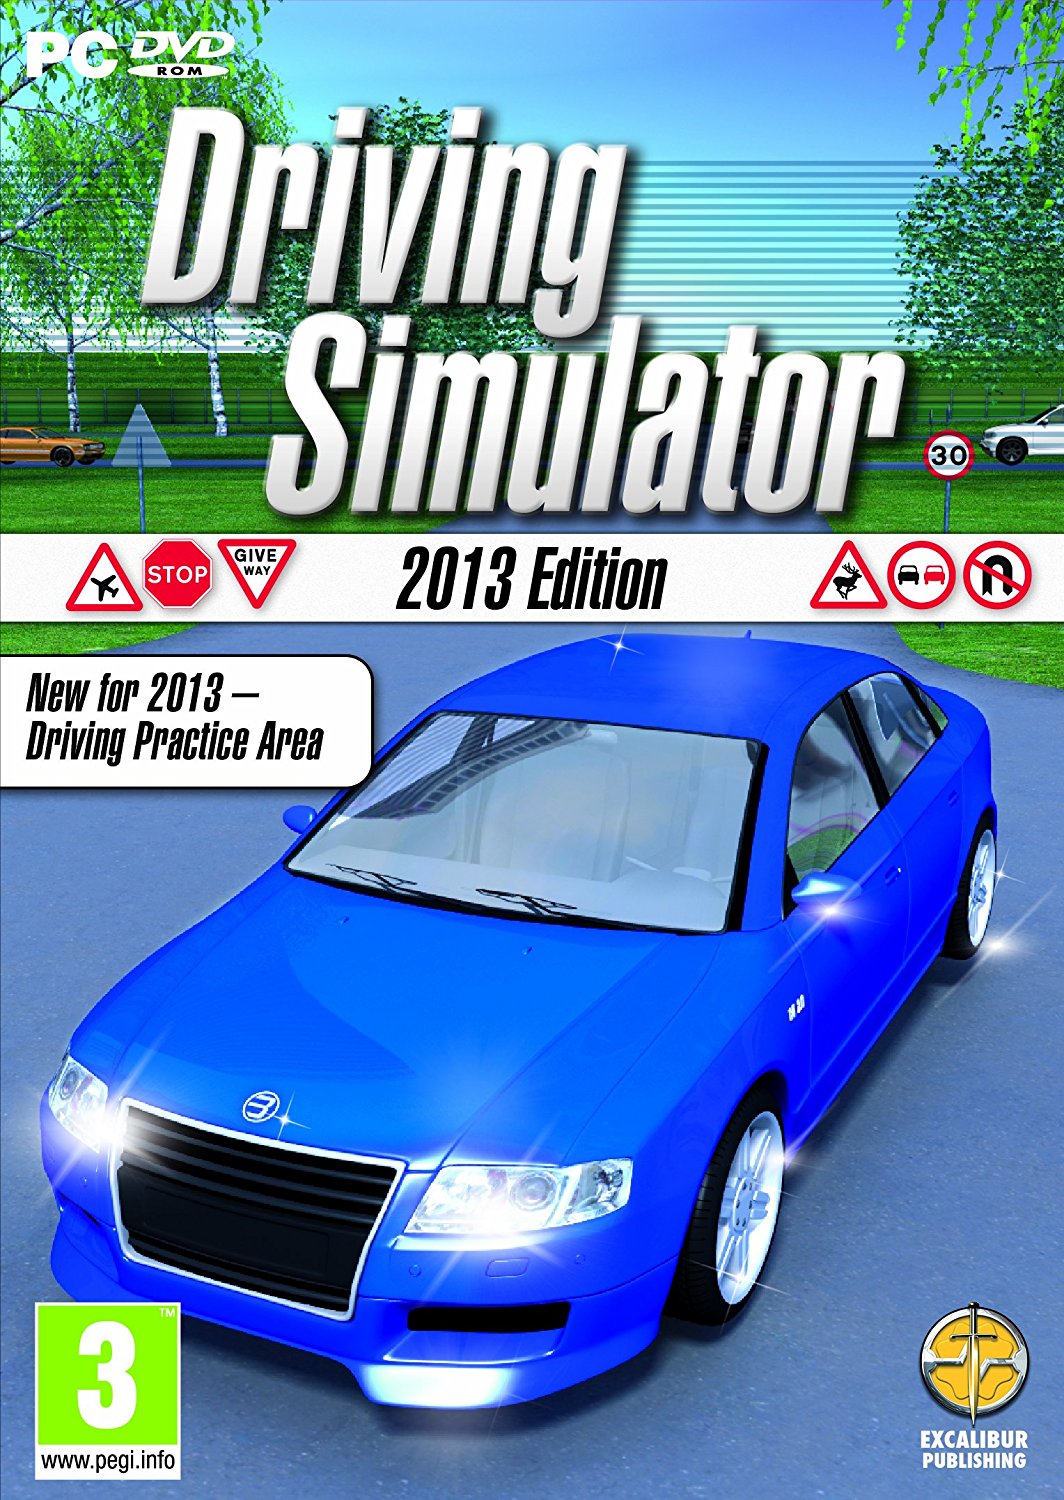 car driving simulator pc game